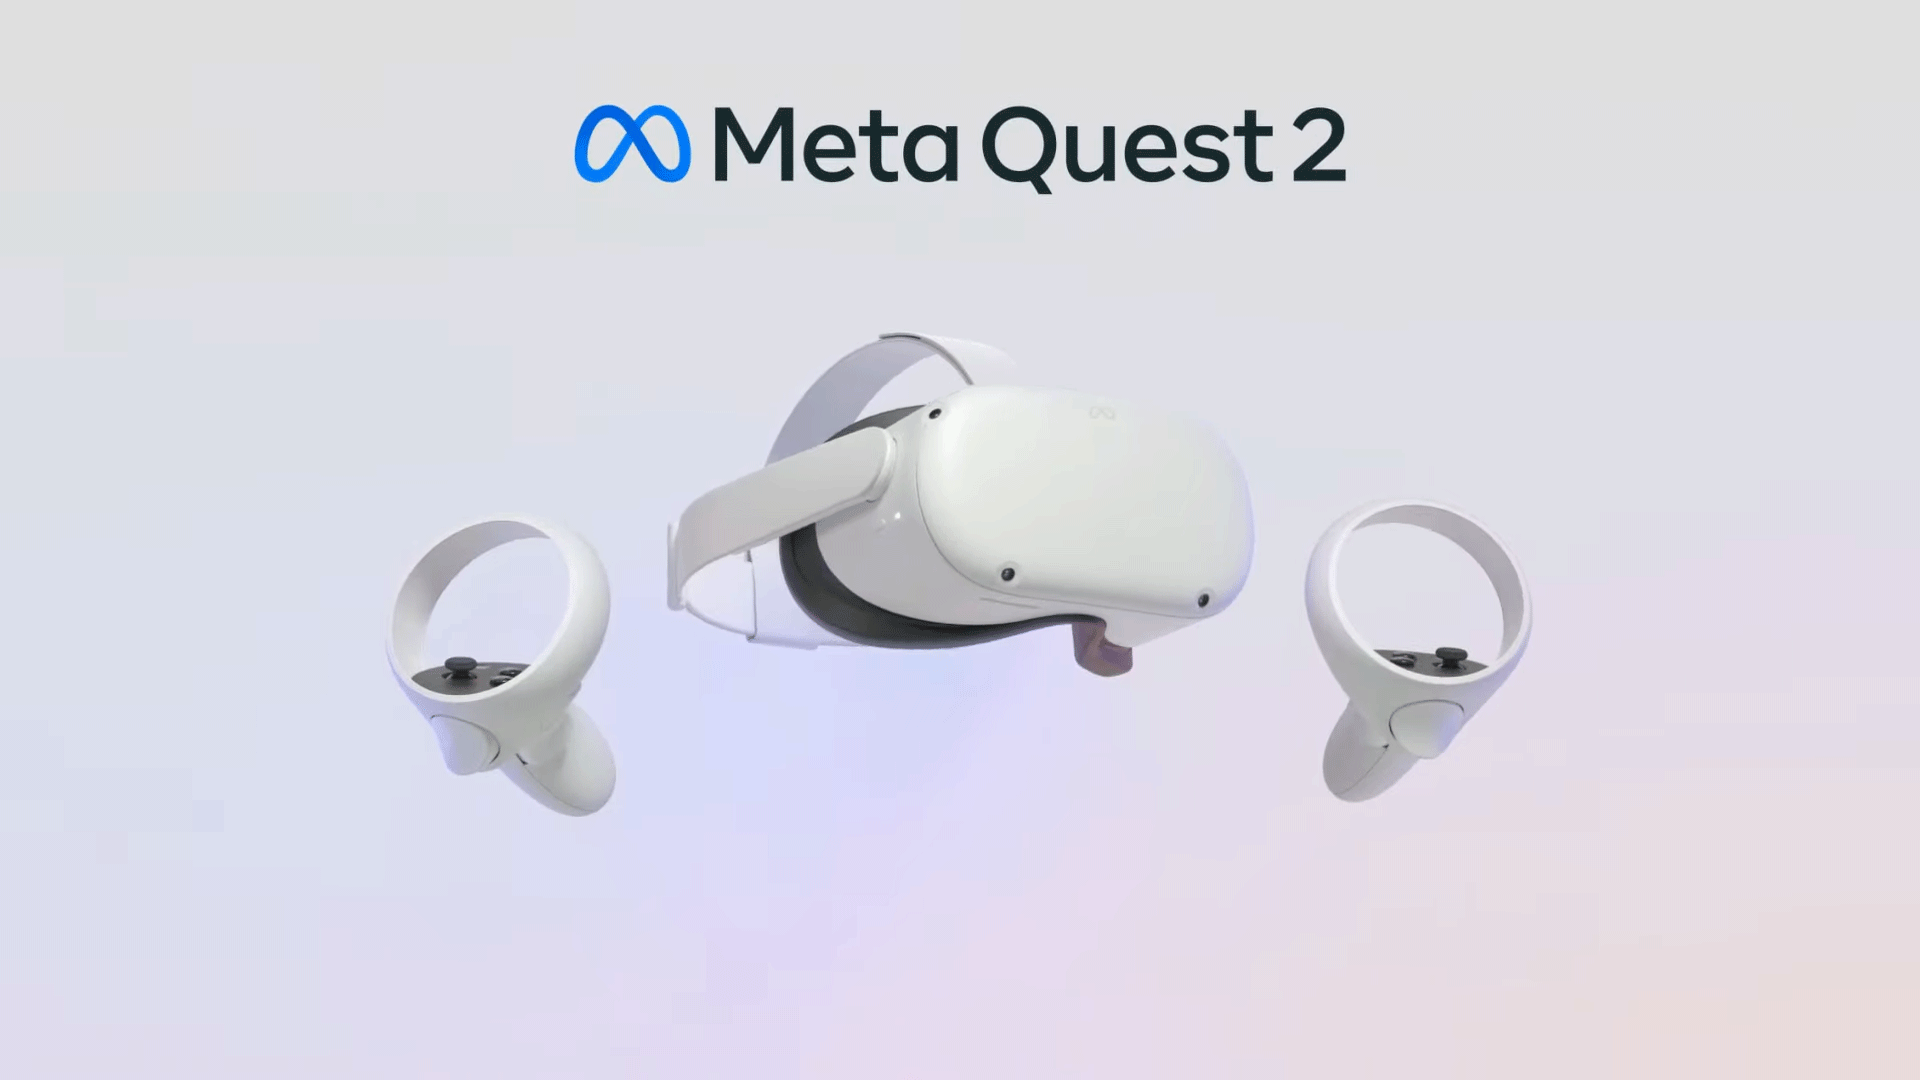 Quest头显不再强制要求登陆脸书 改登陆Meta